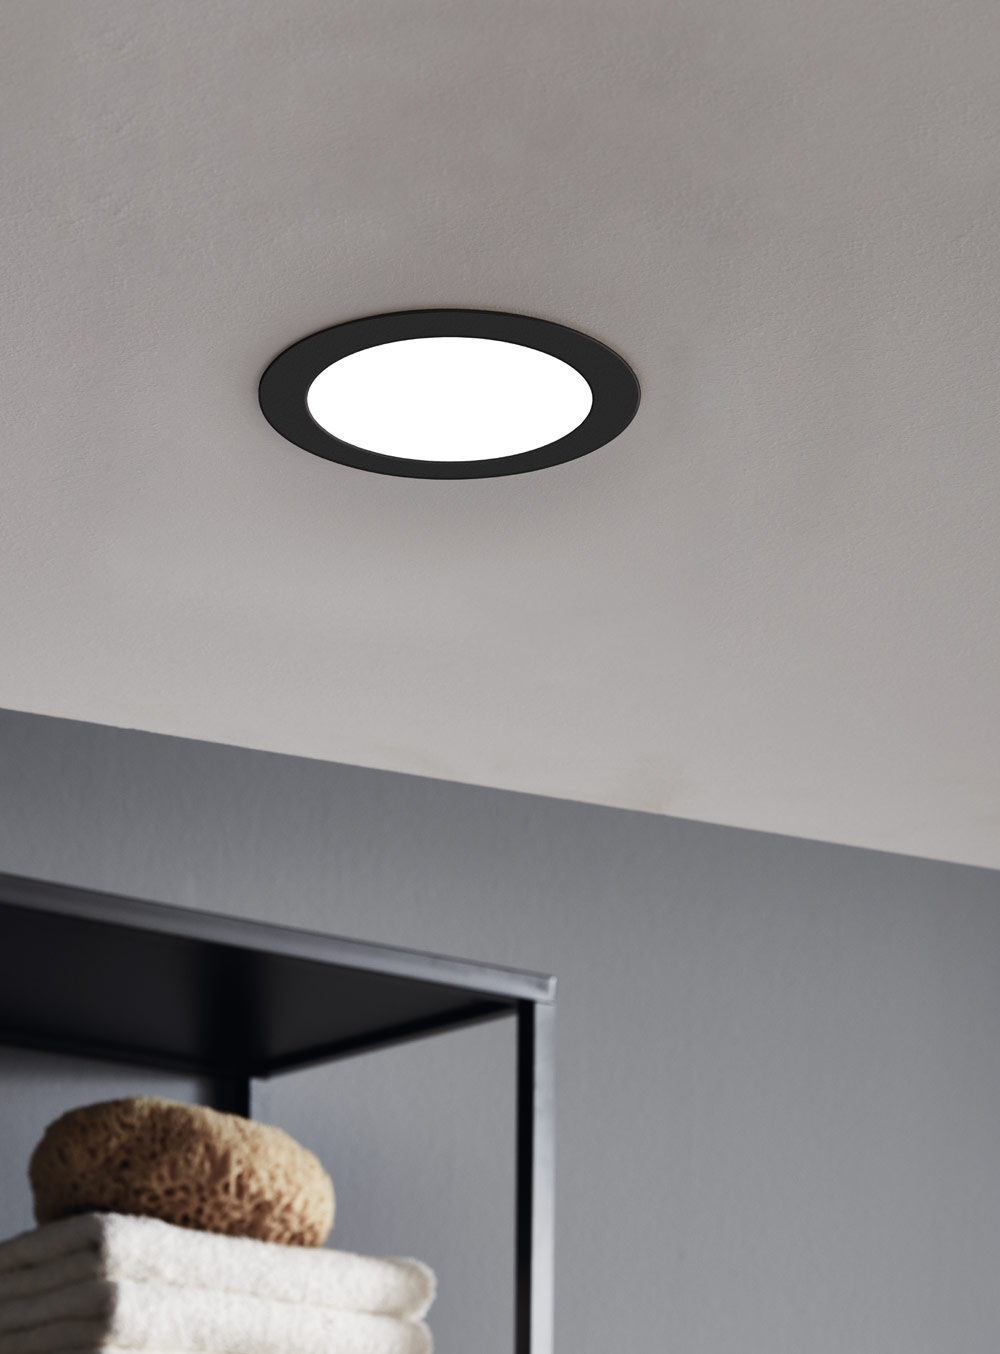 LED Einbaustrahler Einbauspot Deckenlampe Einbaleuchte Lampe Spot Alu 5W eckig 